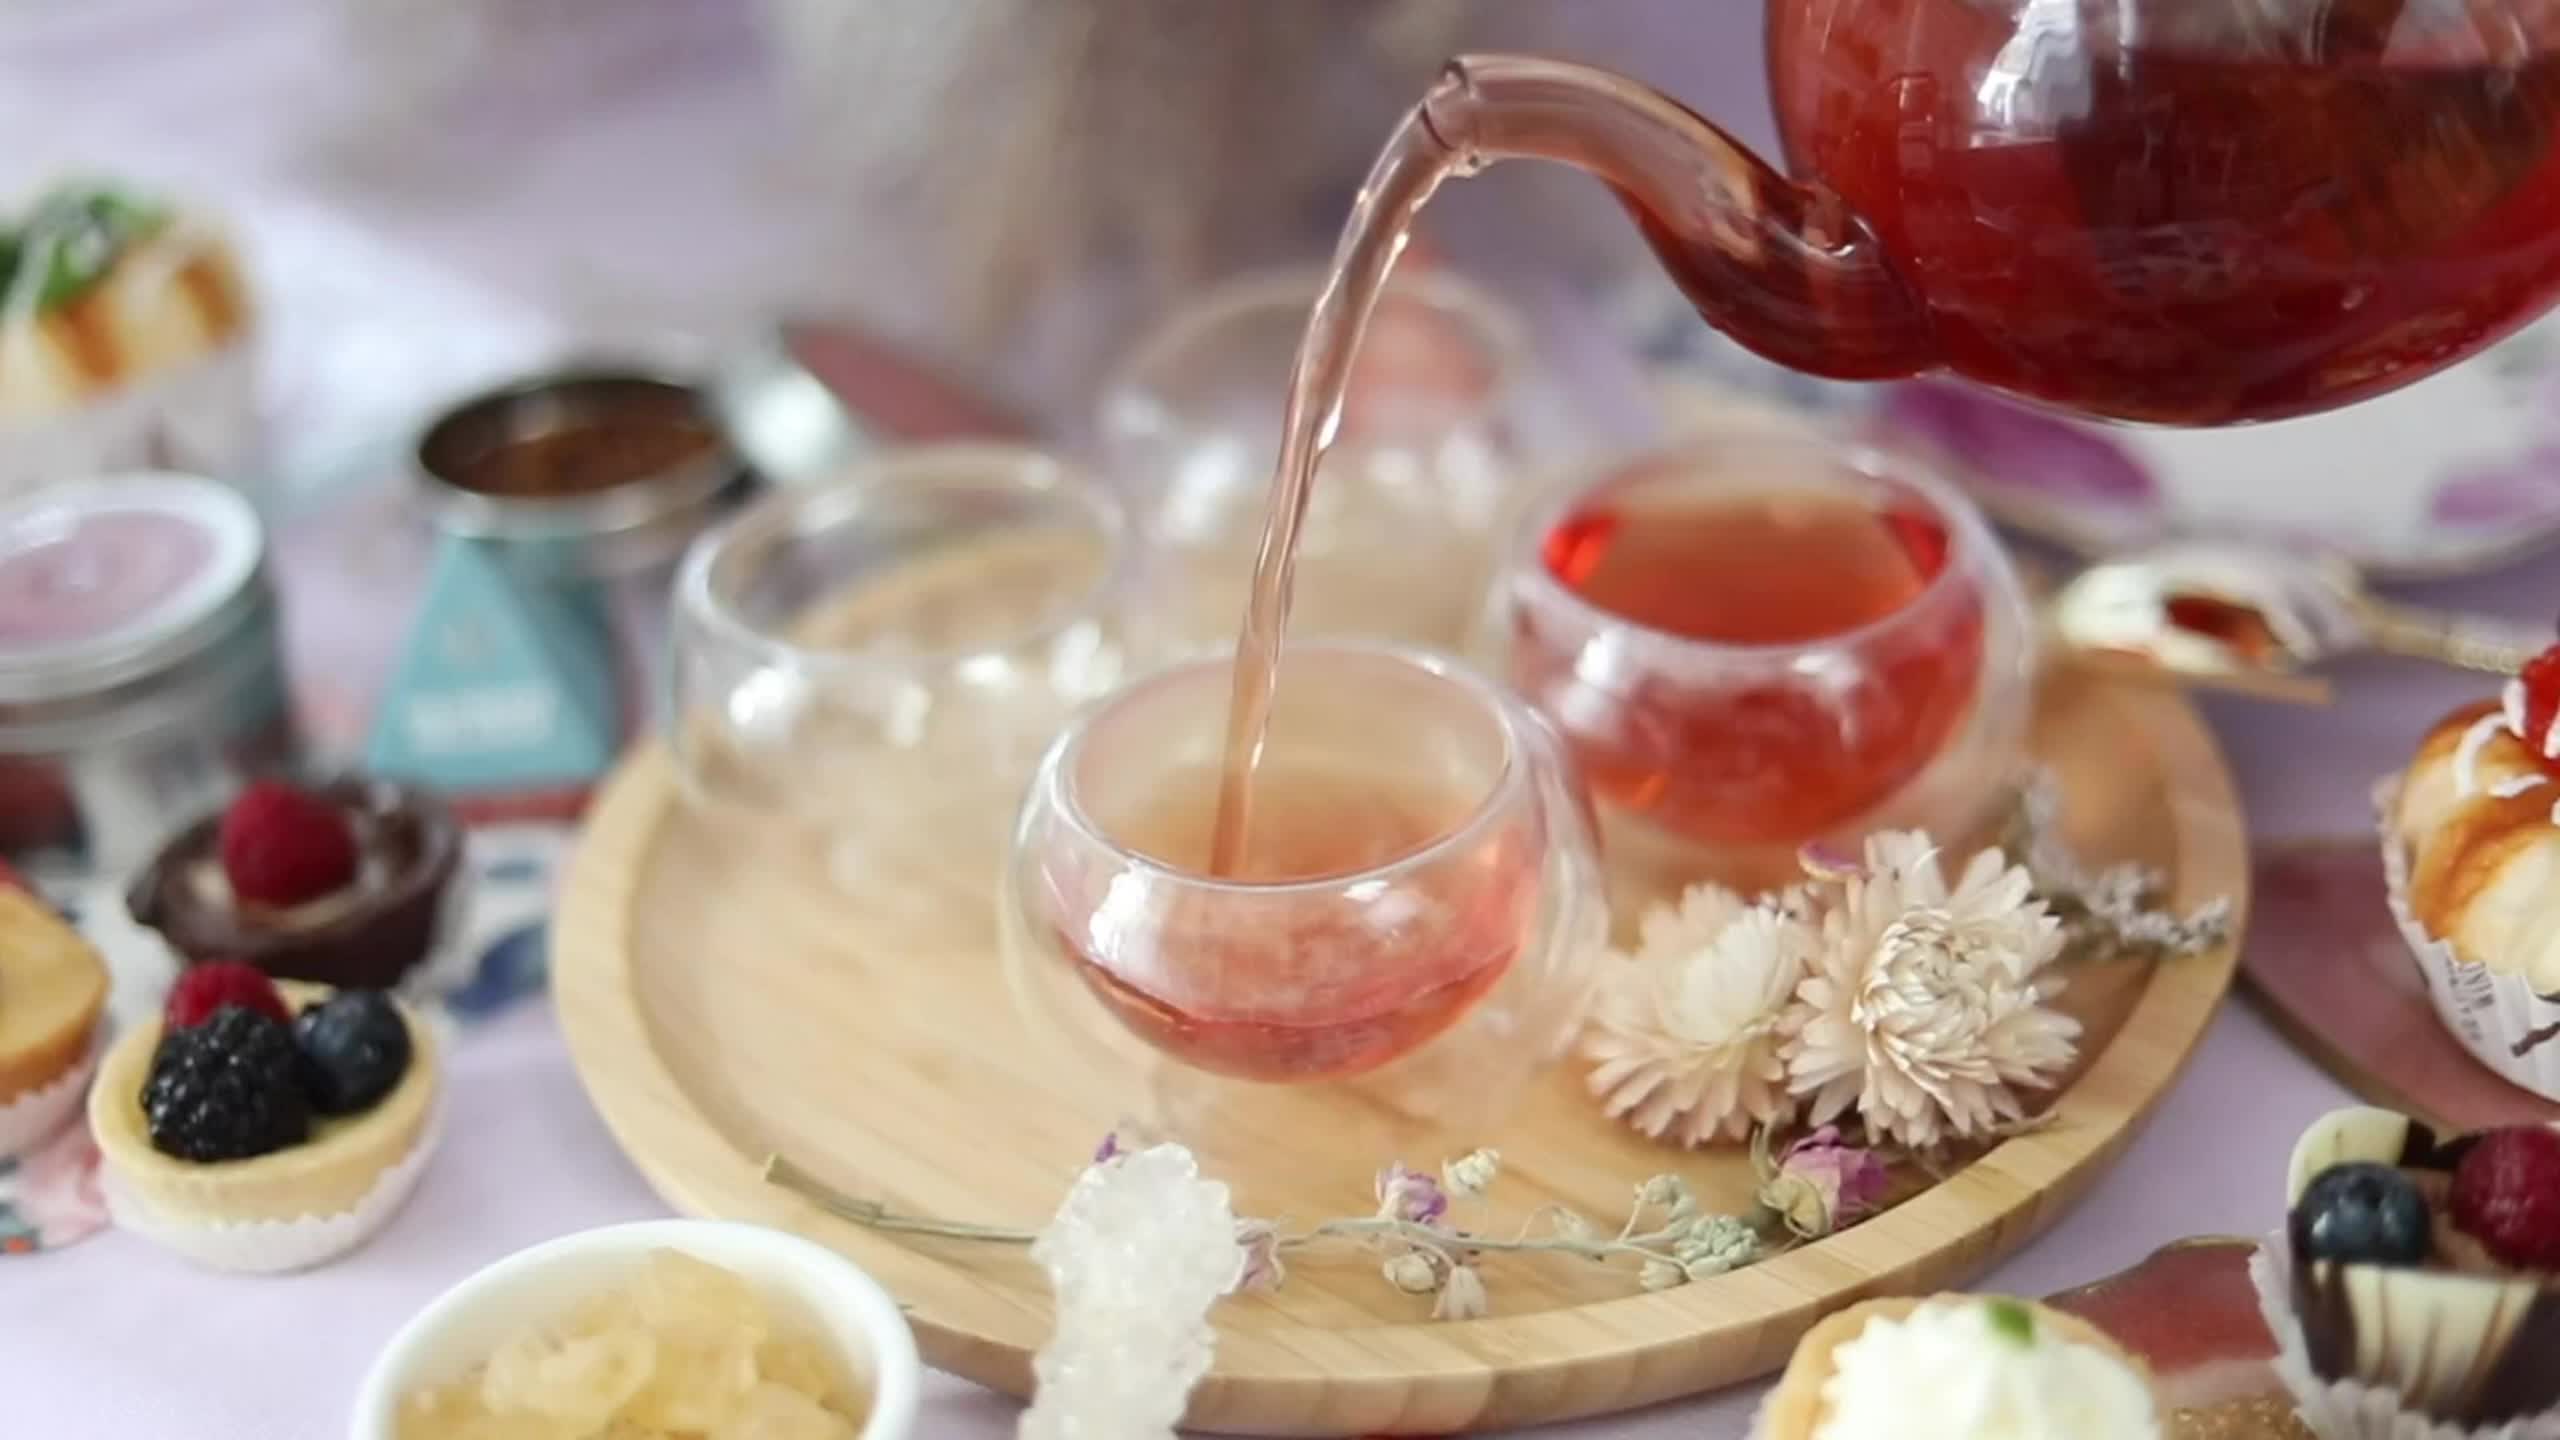 Double Wall Glass Gongfu Tea Cup – Umi Tea Sets